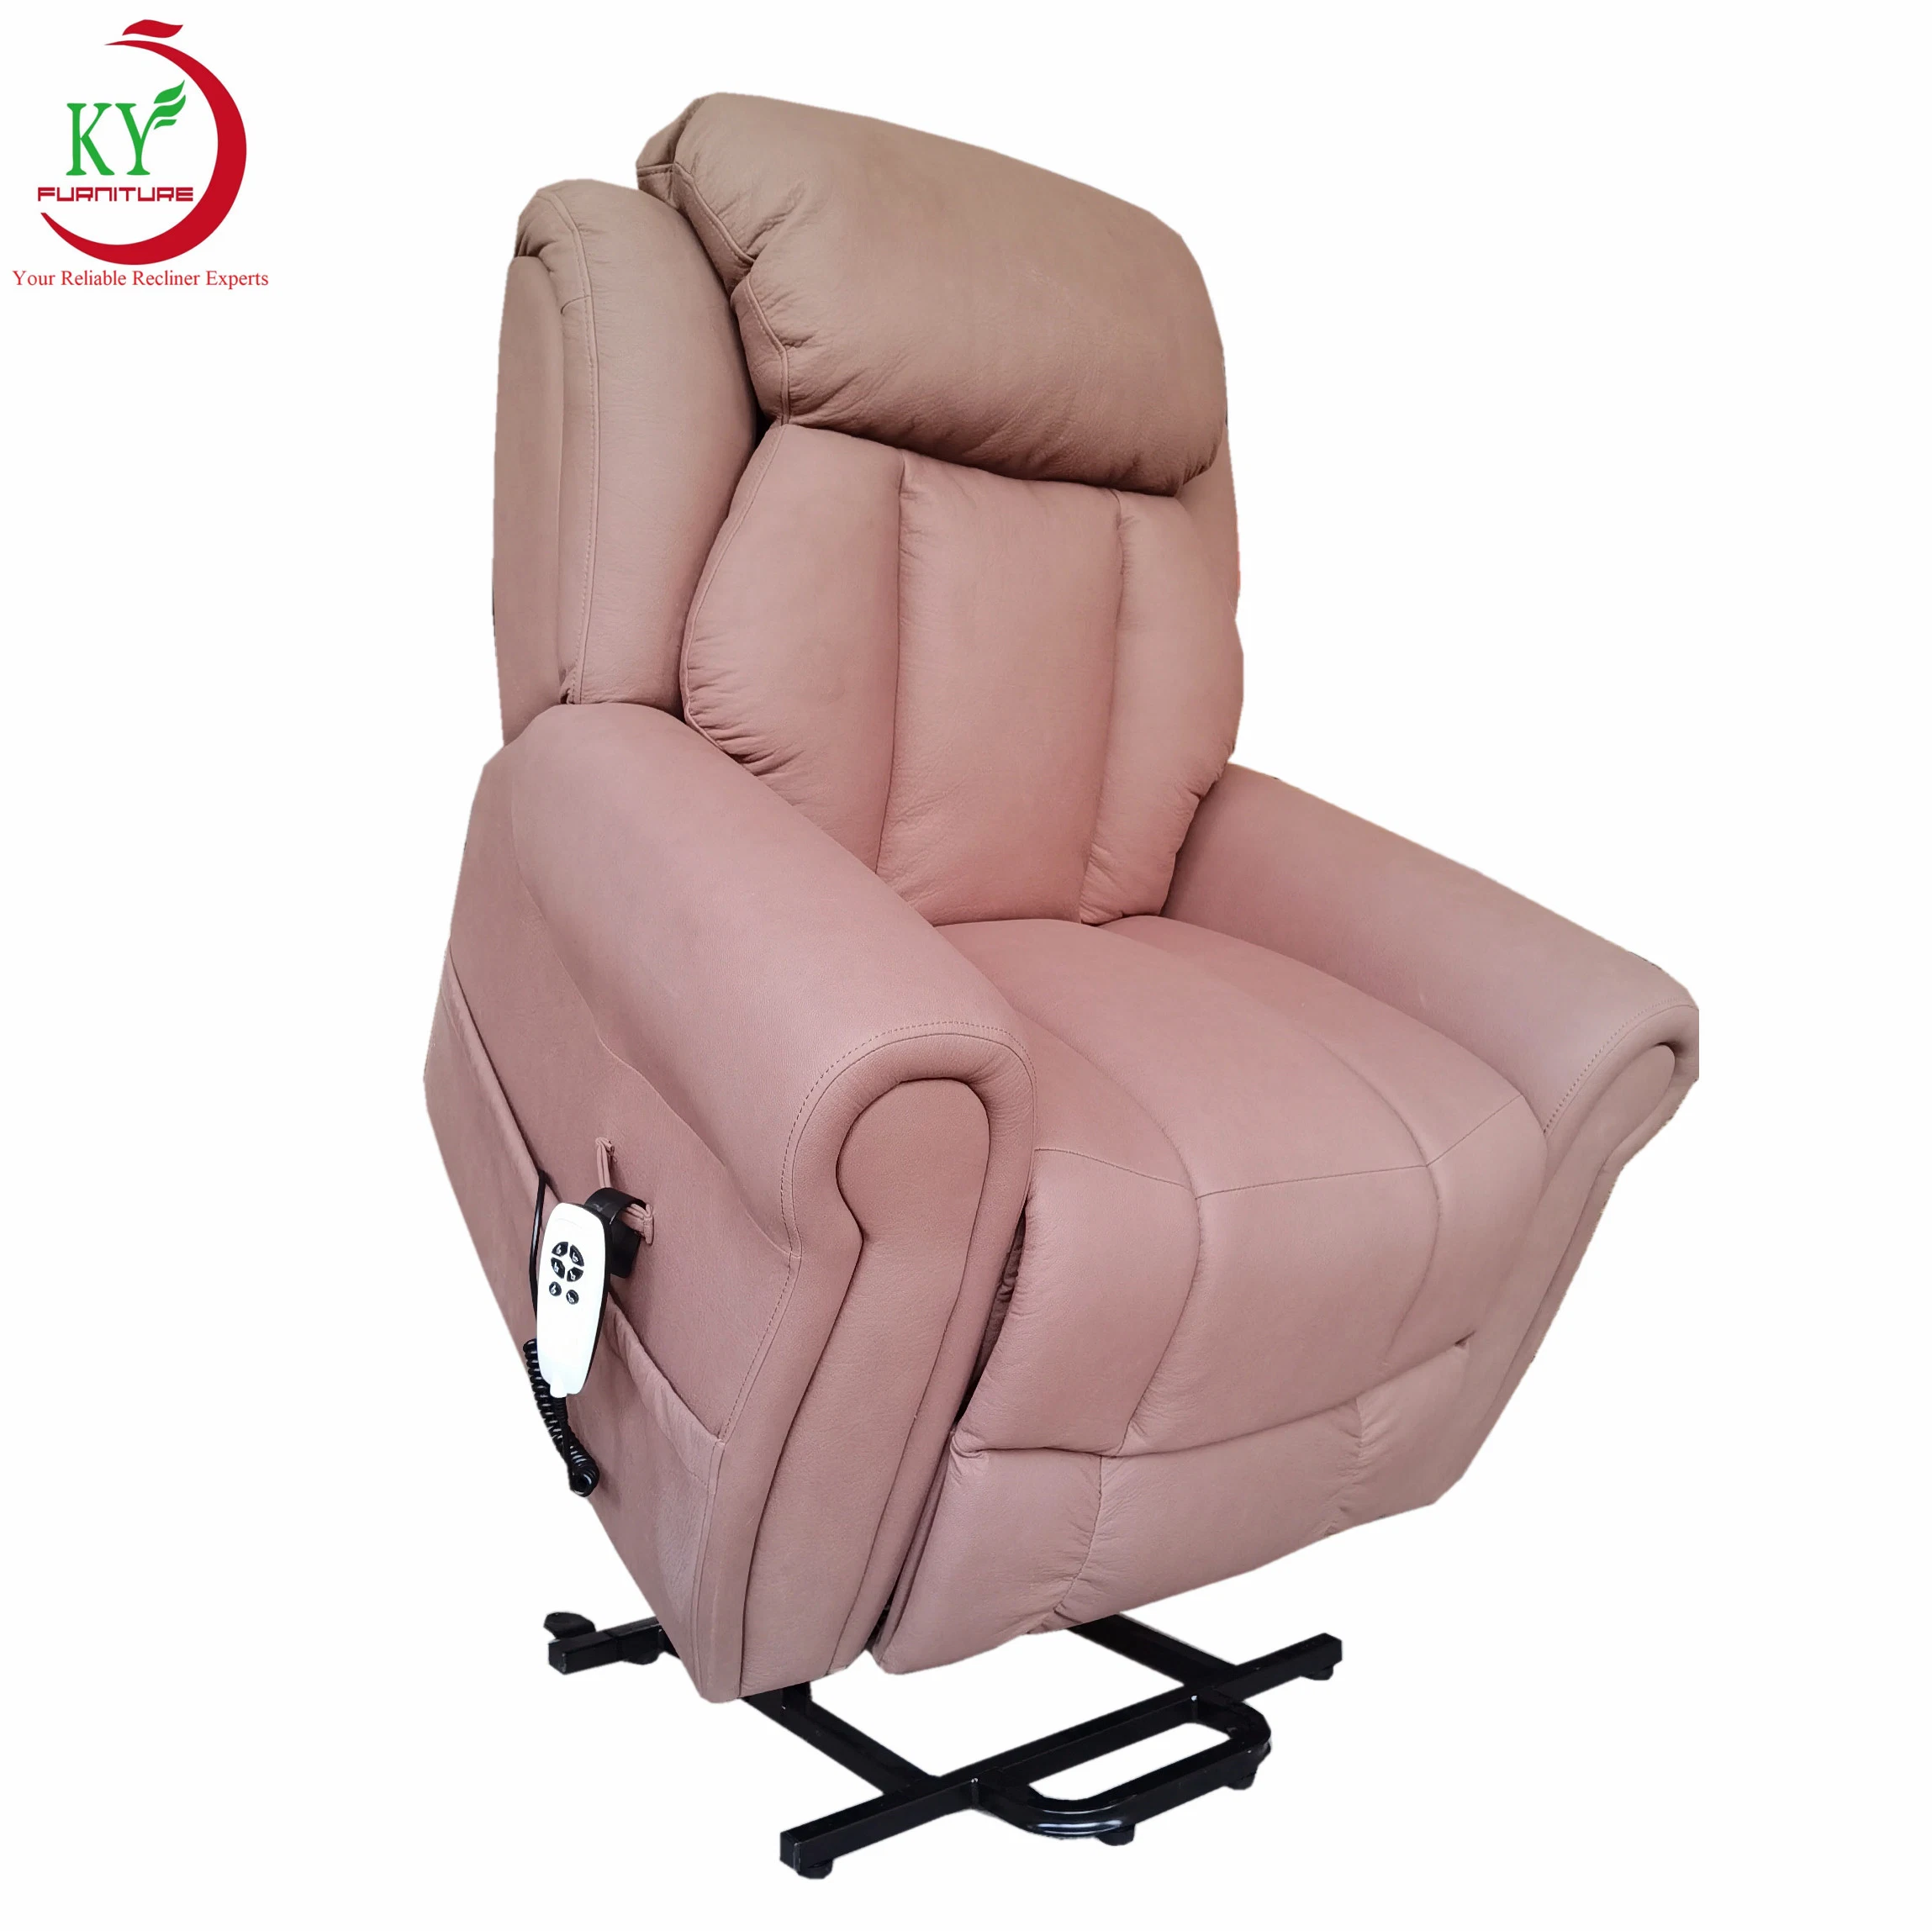 Jky Möbel Air Leder Elektro Mobilität Lift Recliner Stuhl mit Massage-Funktion für ältere und behinderte Menschen